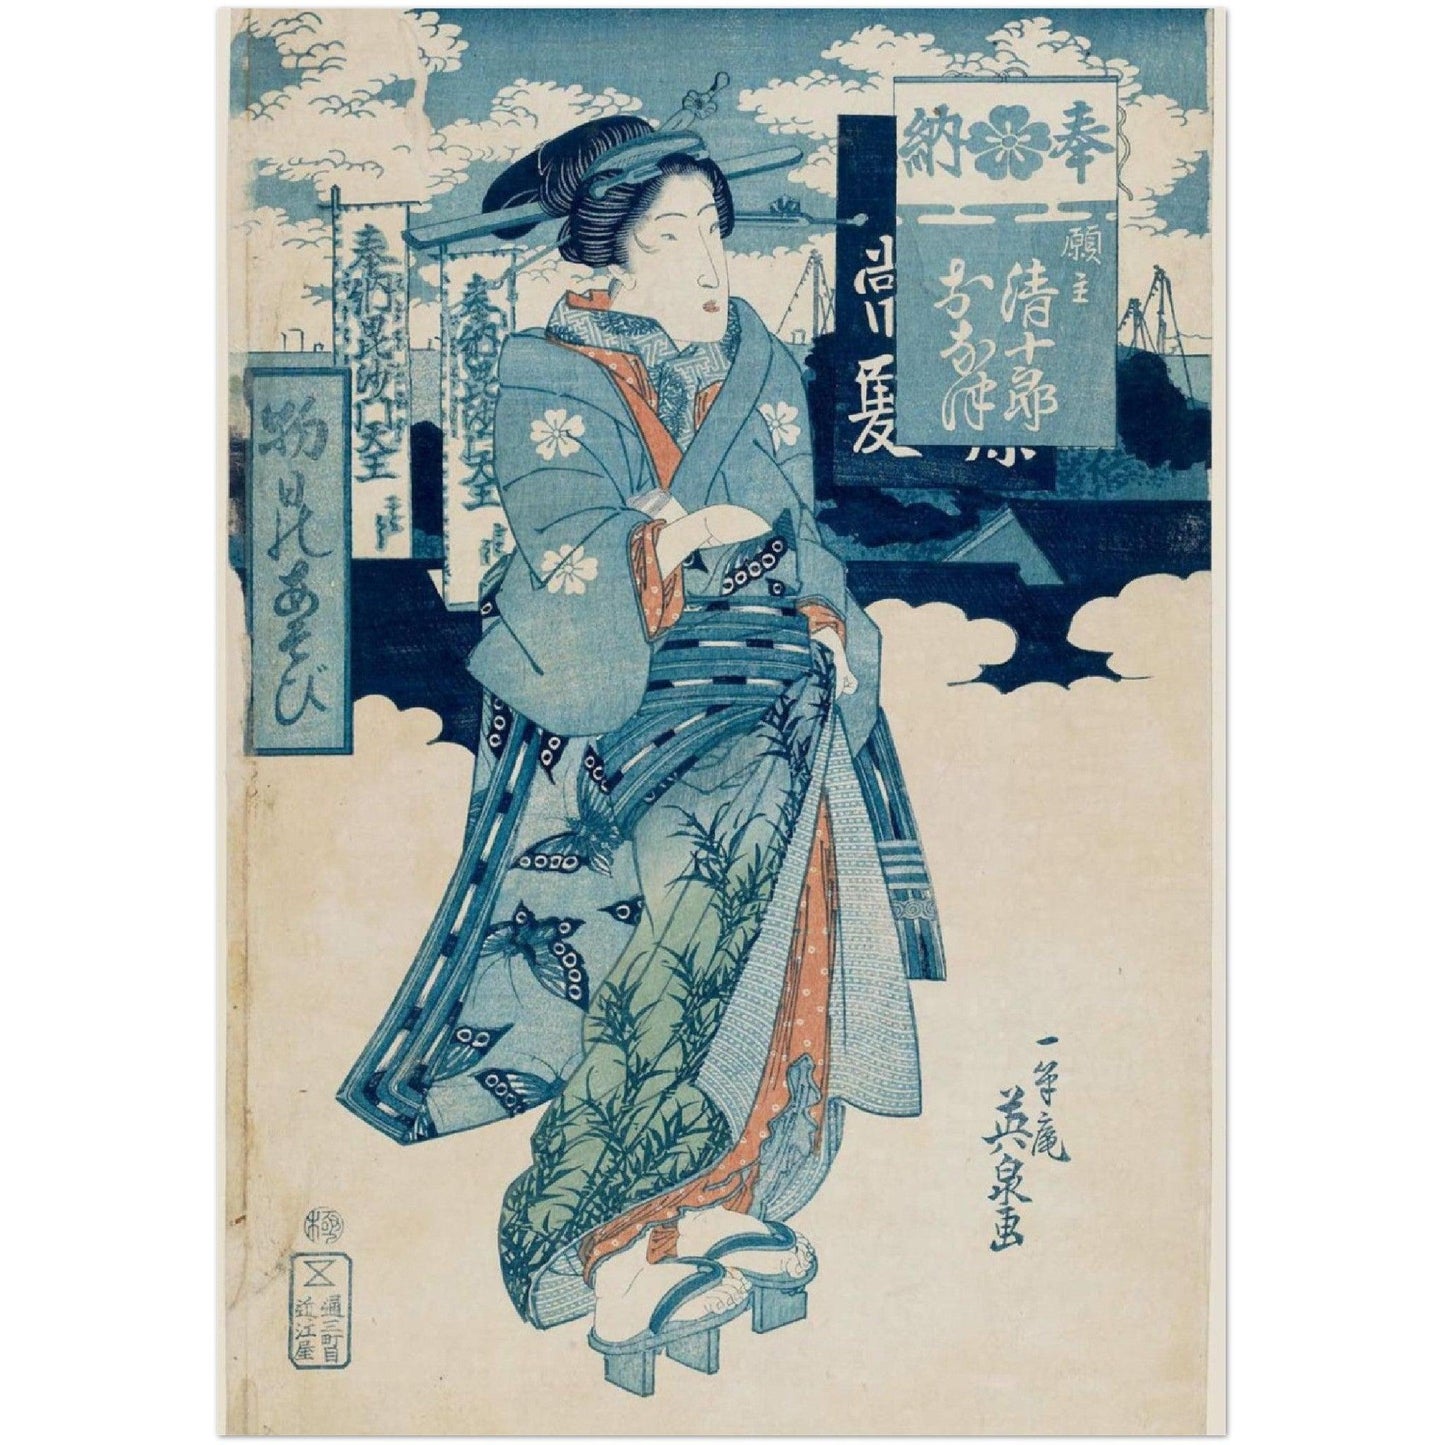 Monbi no asobi and the blue butterfly kimono- Keisai Eisen